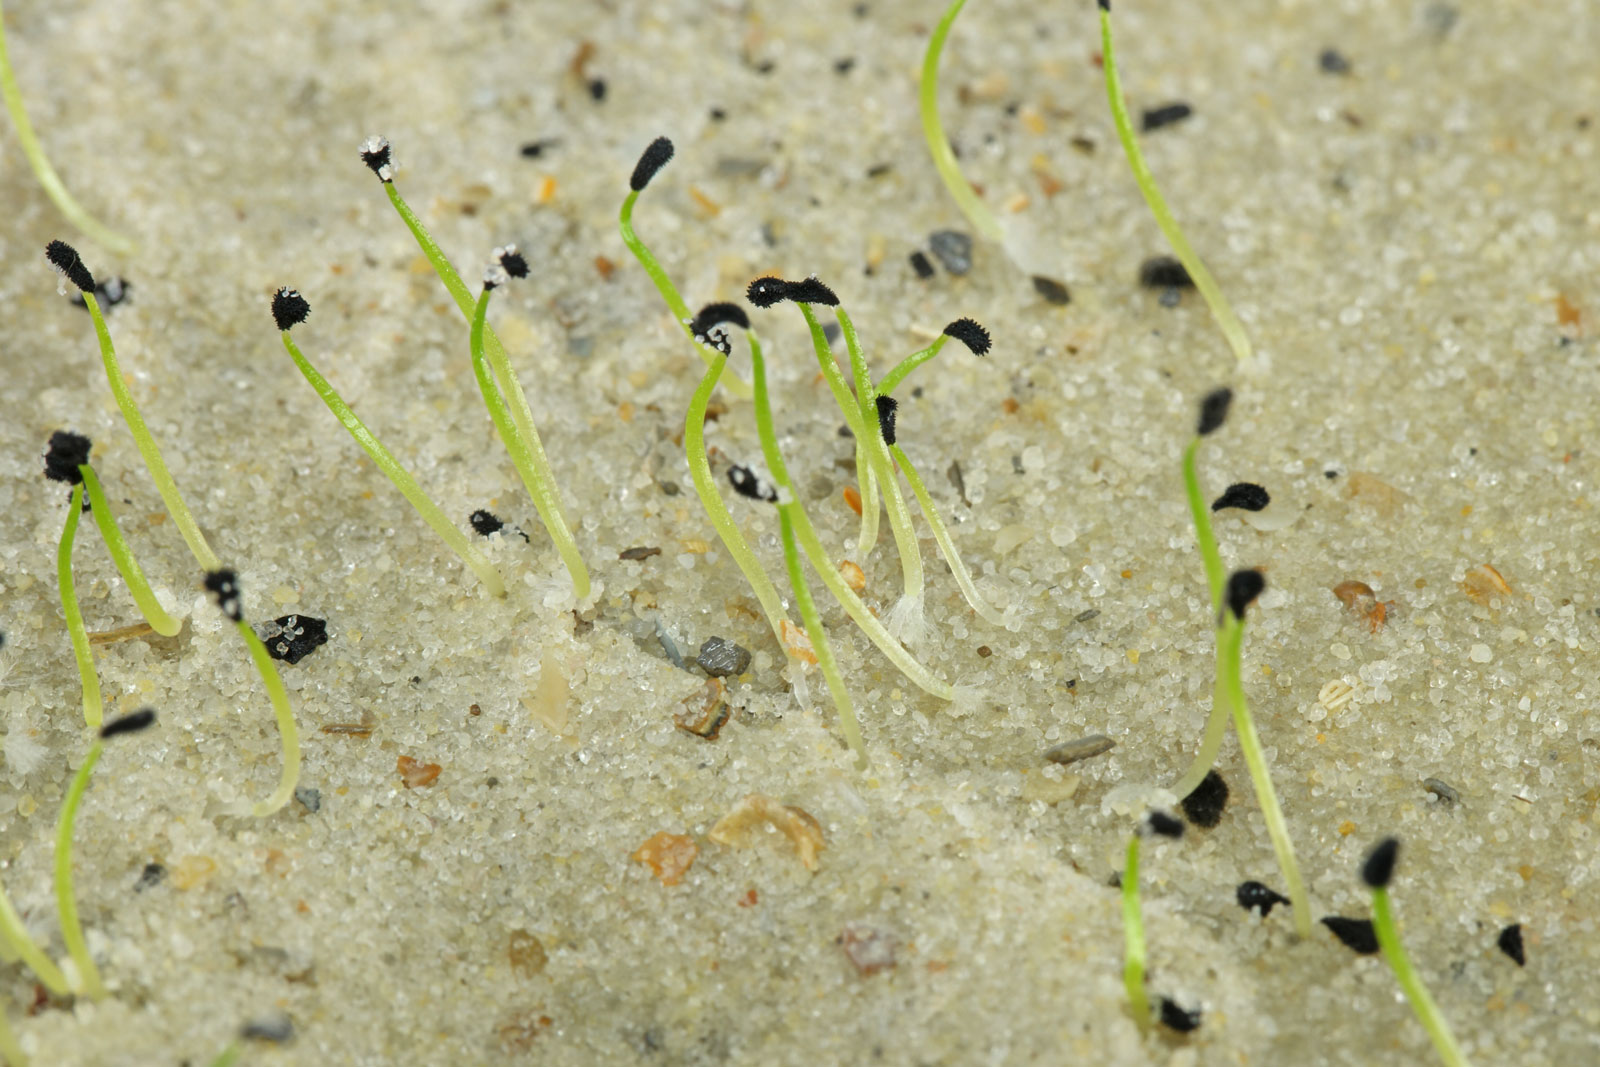 Ornithogalum seeds